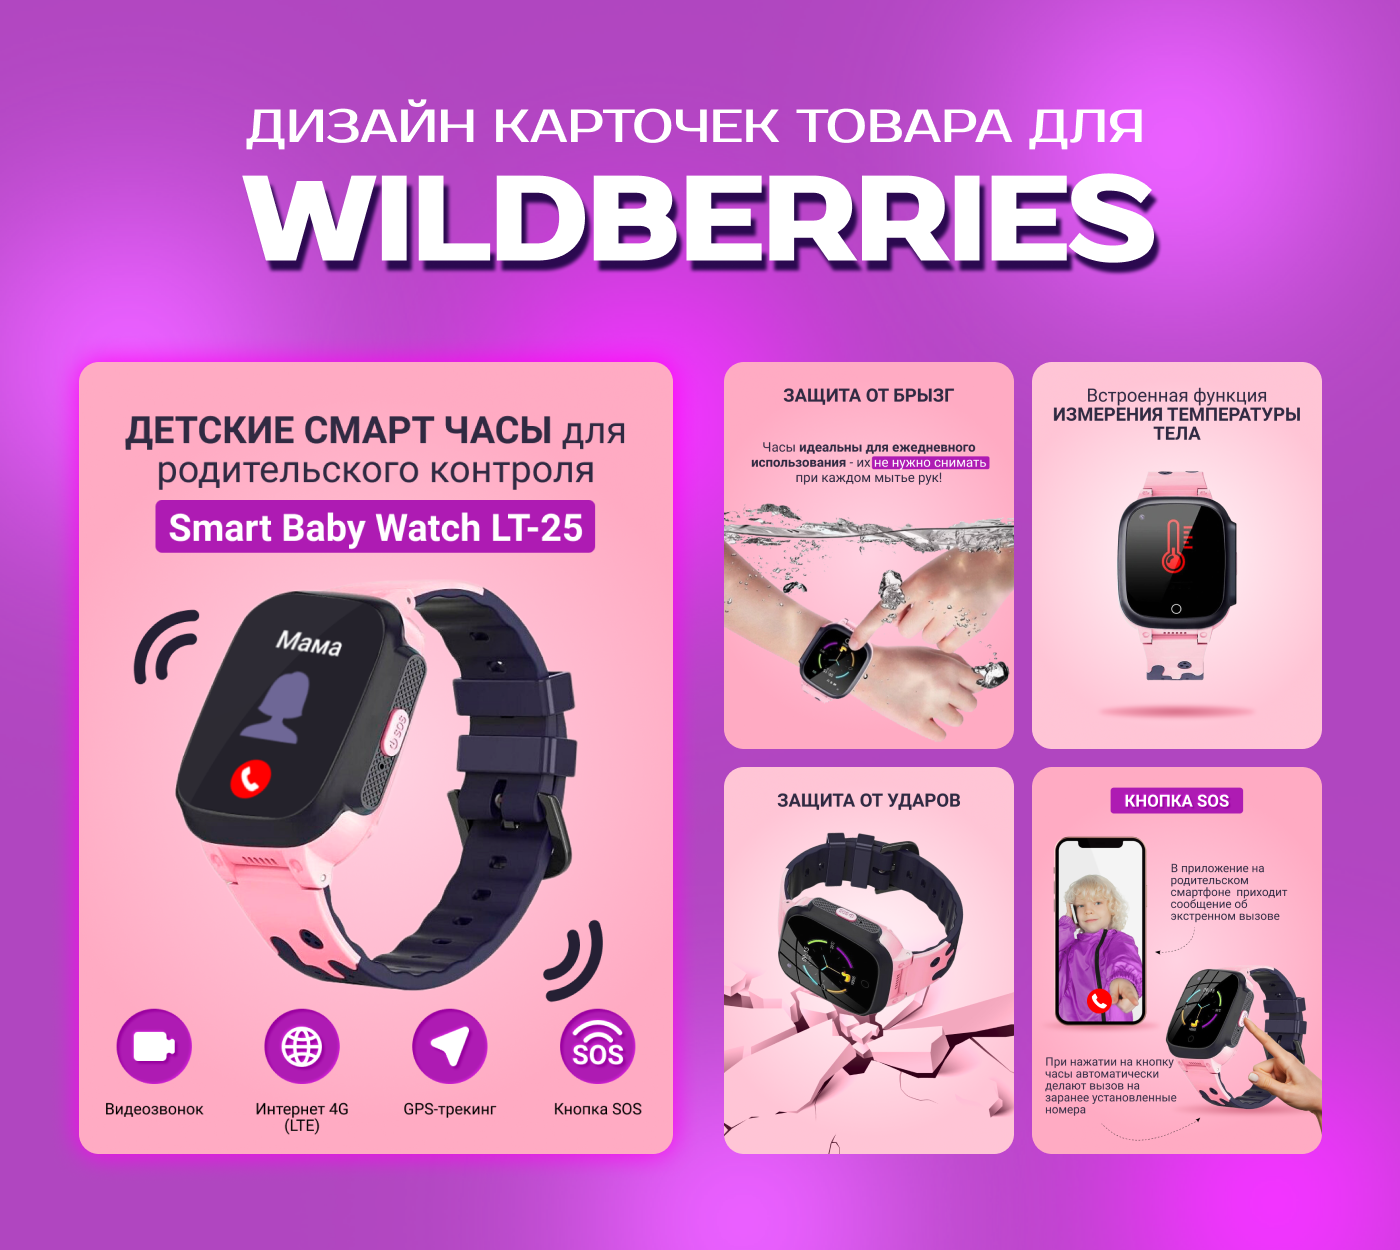 Интересное на вб. Карточка товара Wildberries. Дизайн карточек товара для Wildberries. Карточки для вайлдберриз дизайн. Инфографика Wildberries для карточек.